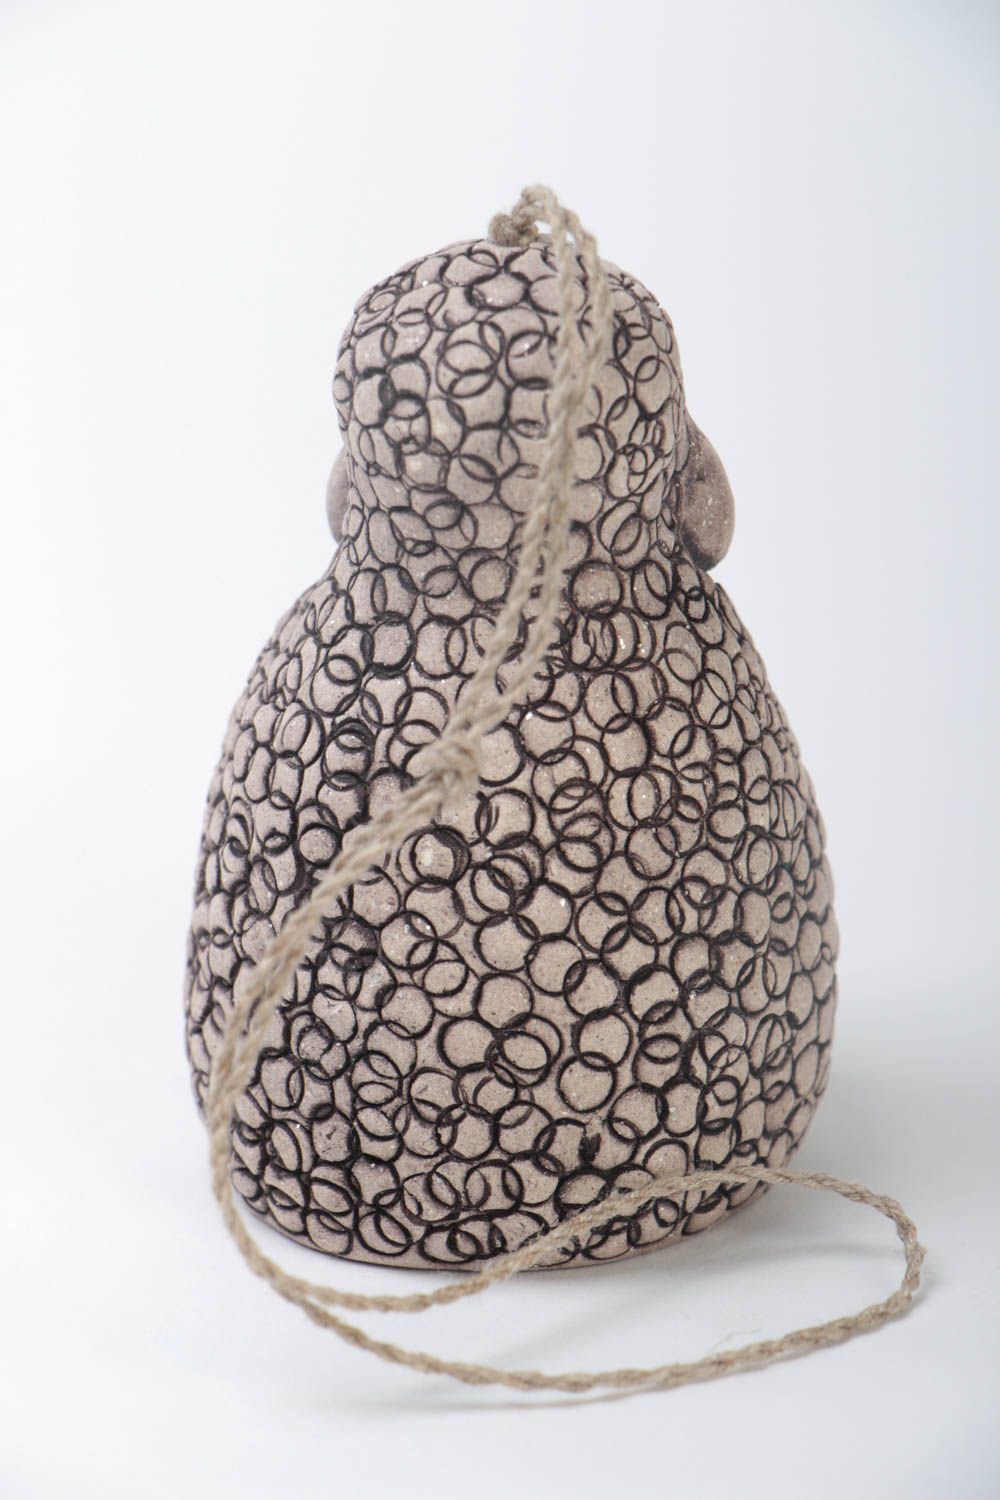 Deko Glöckchen aus Ton in Form von Schaf aus Keramik öko rein handmade bemalt foto 3